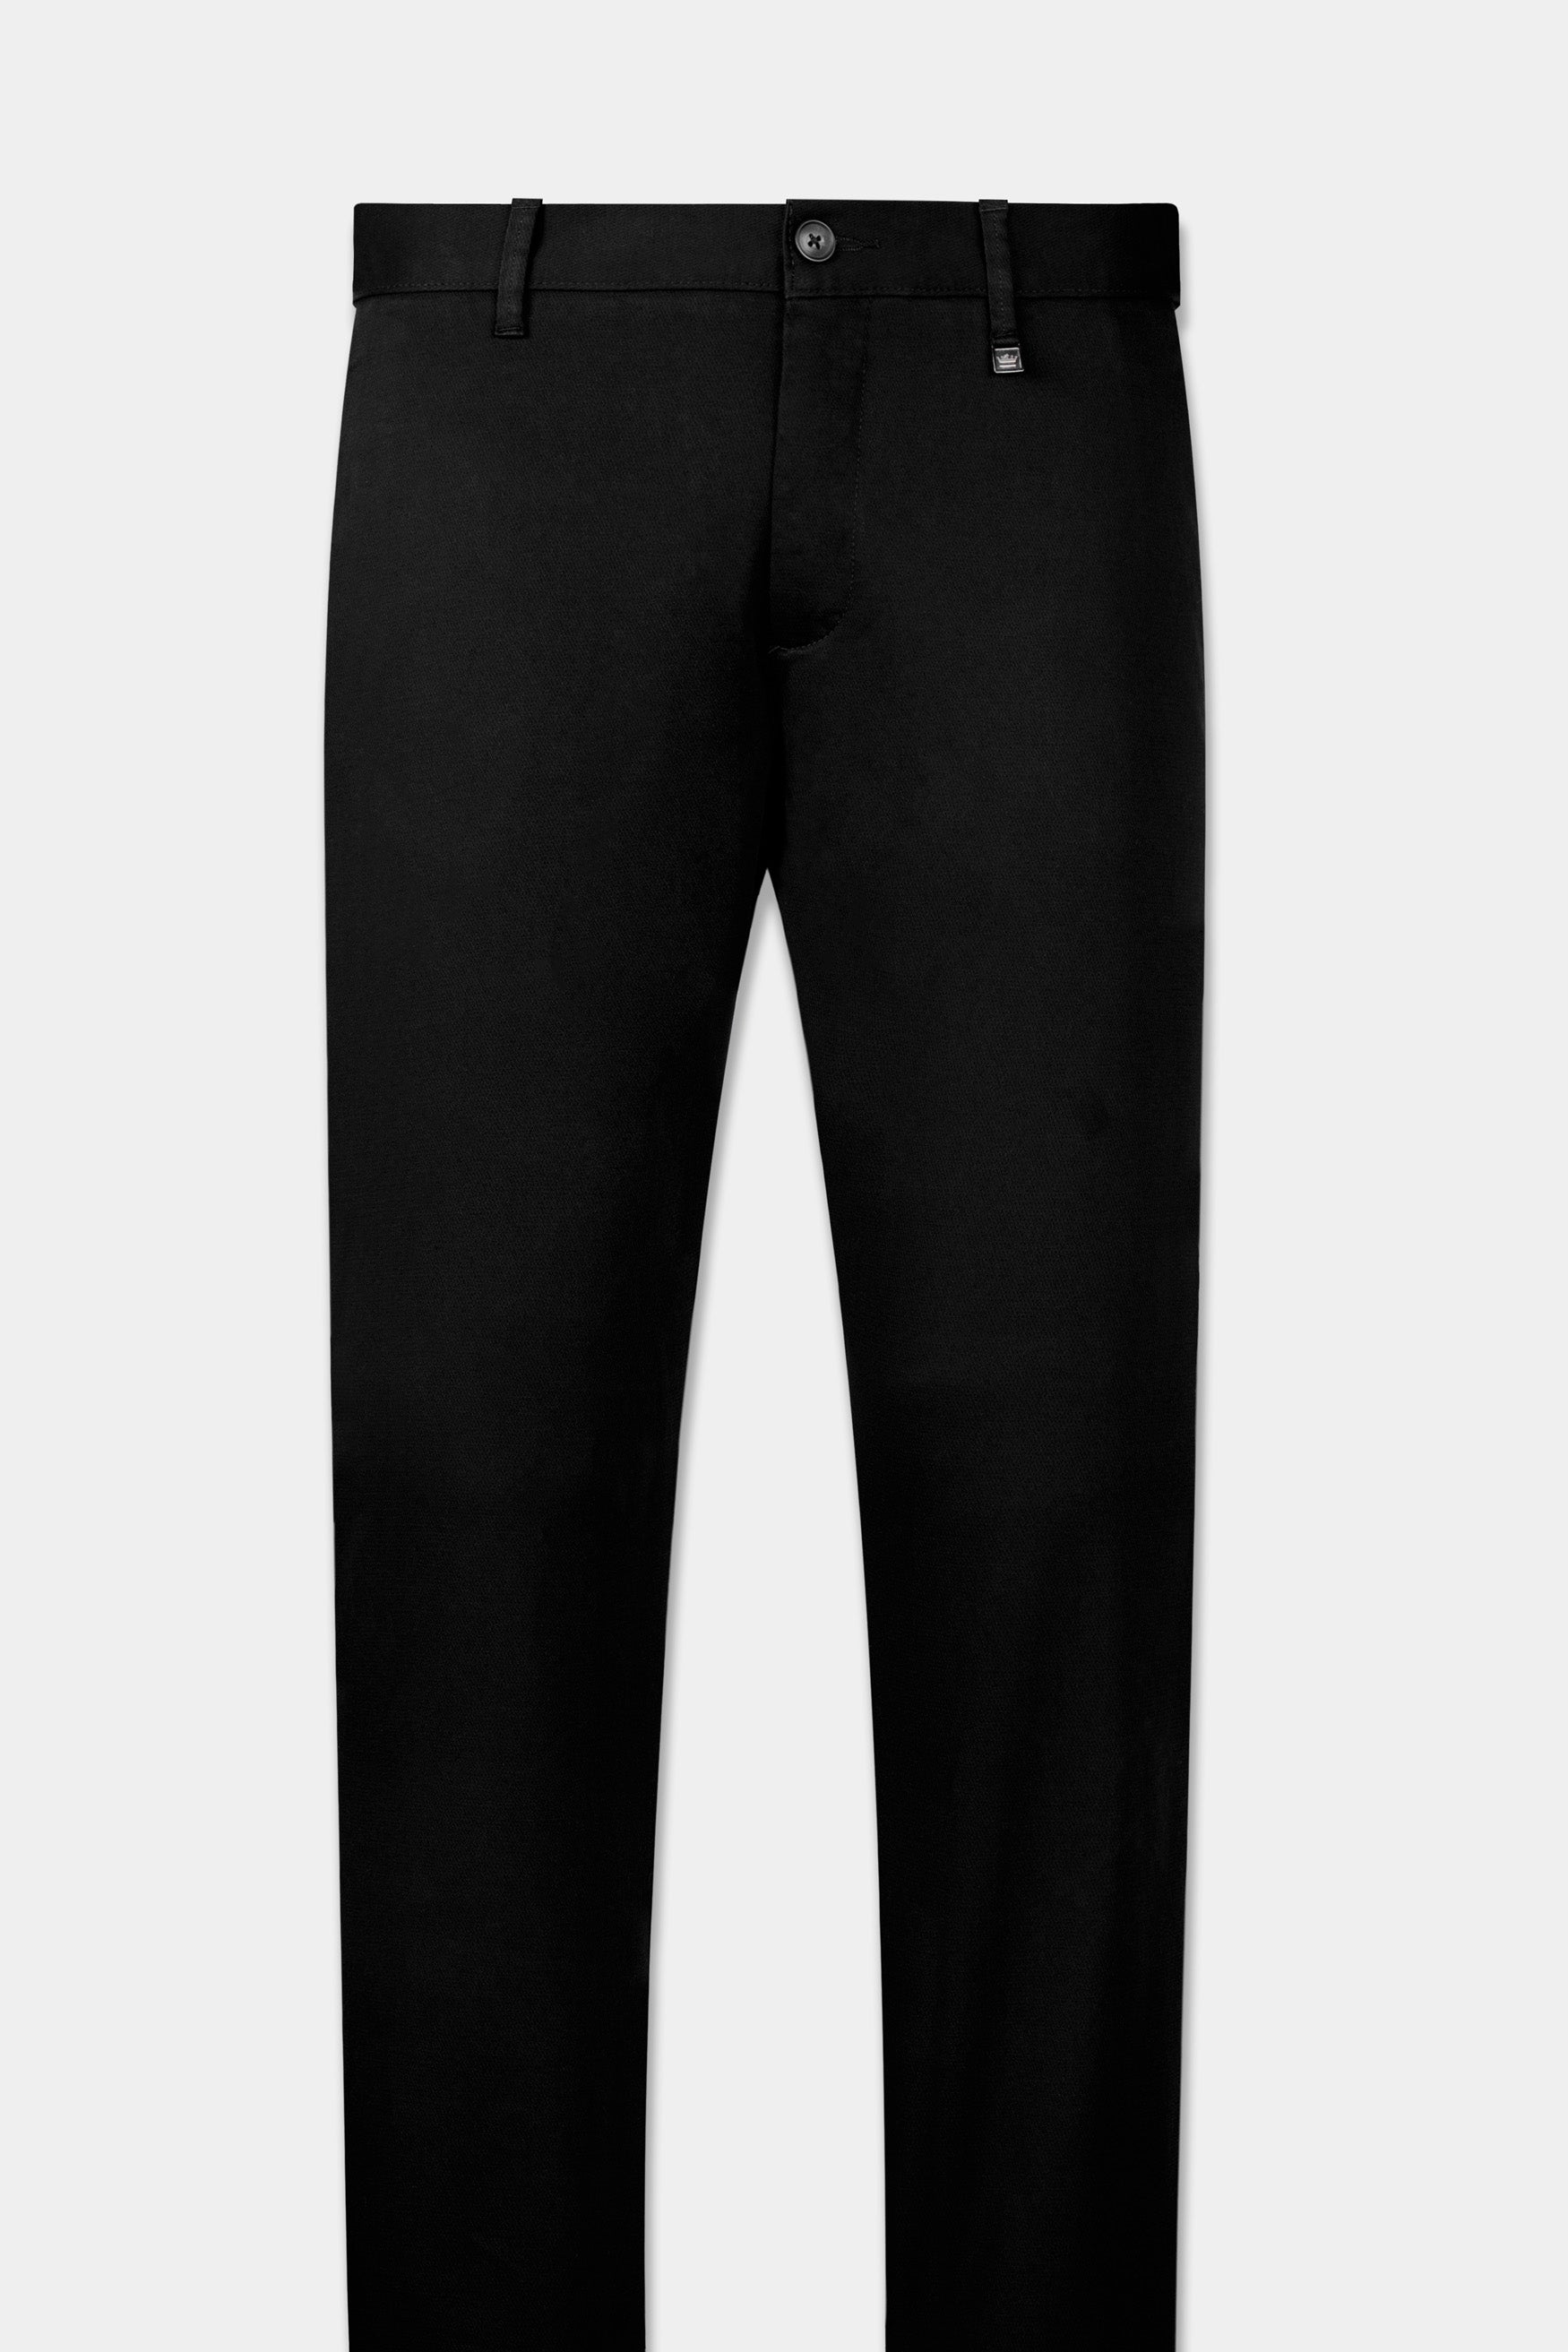 Cargo Pants Men Ankle Length Streetwear Casual Pants Men Military Style  Slim Fit Pure Cotton Trouser Japan Style Black Pants Men